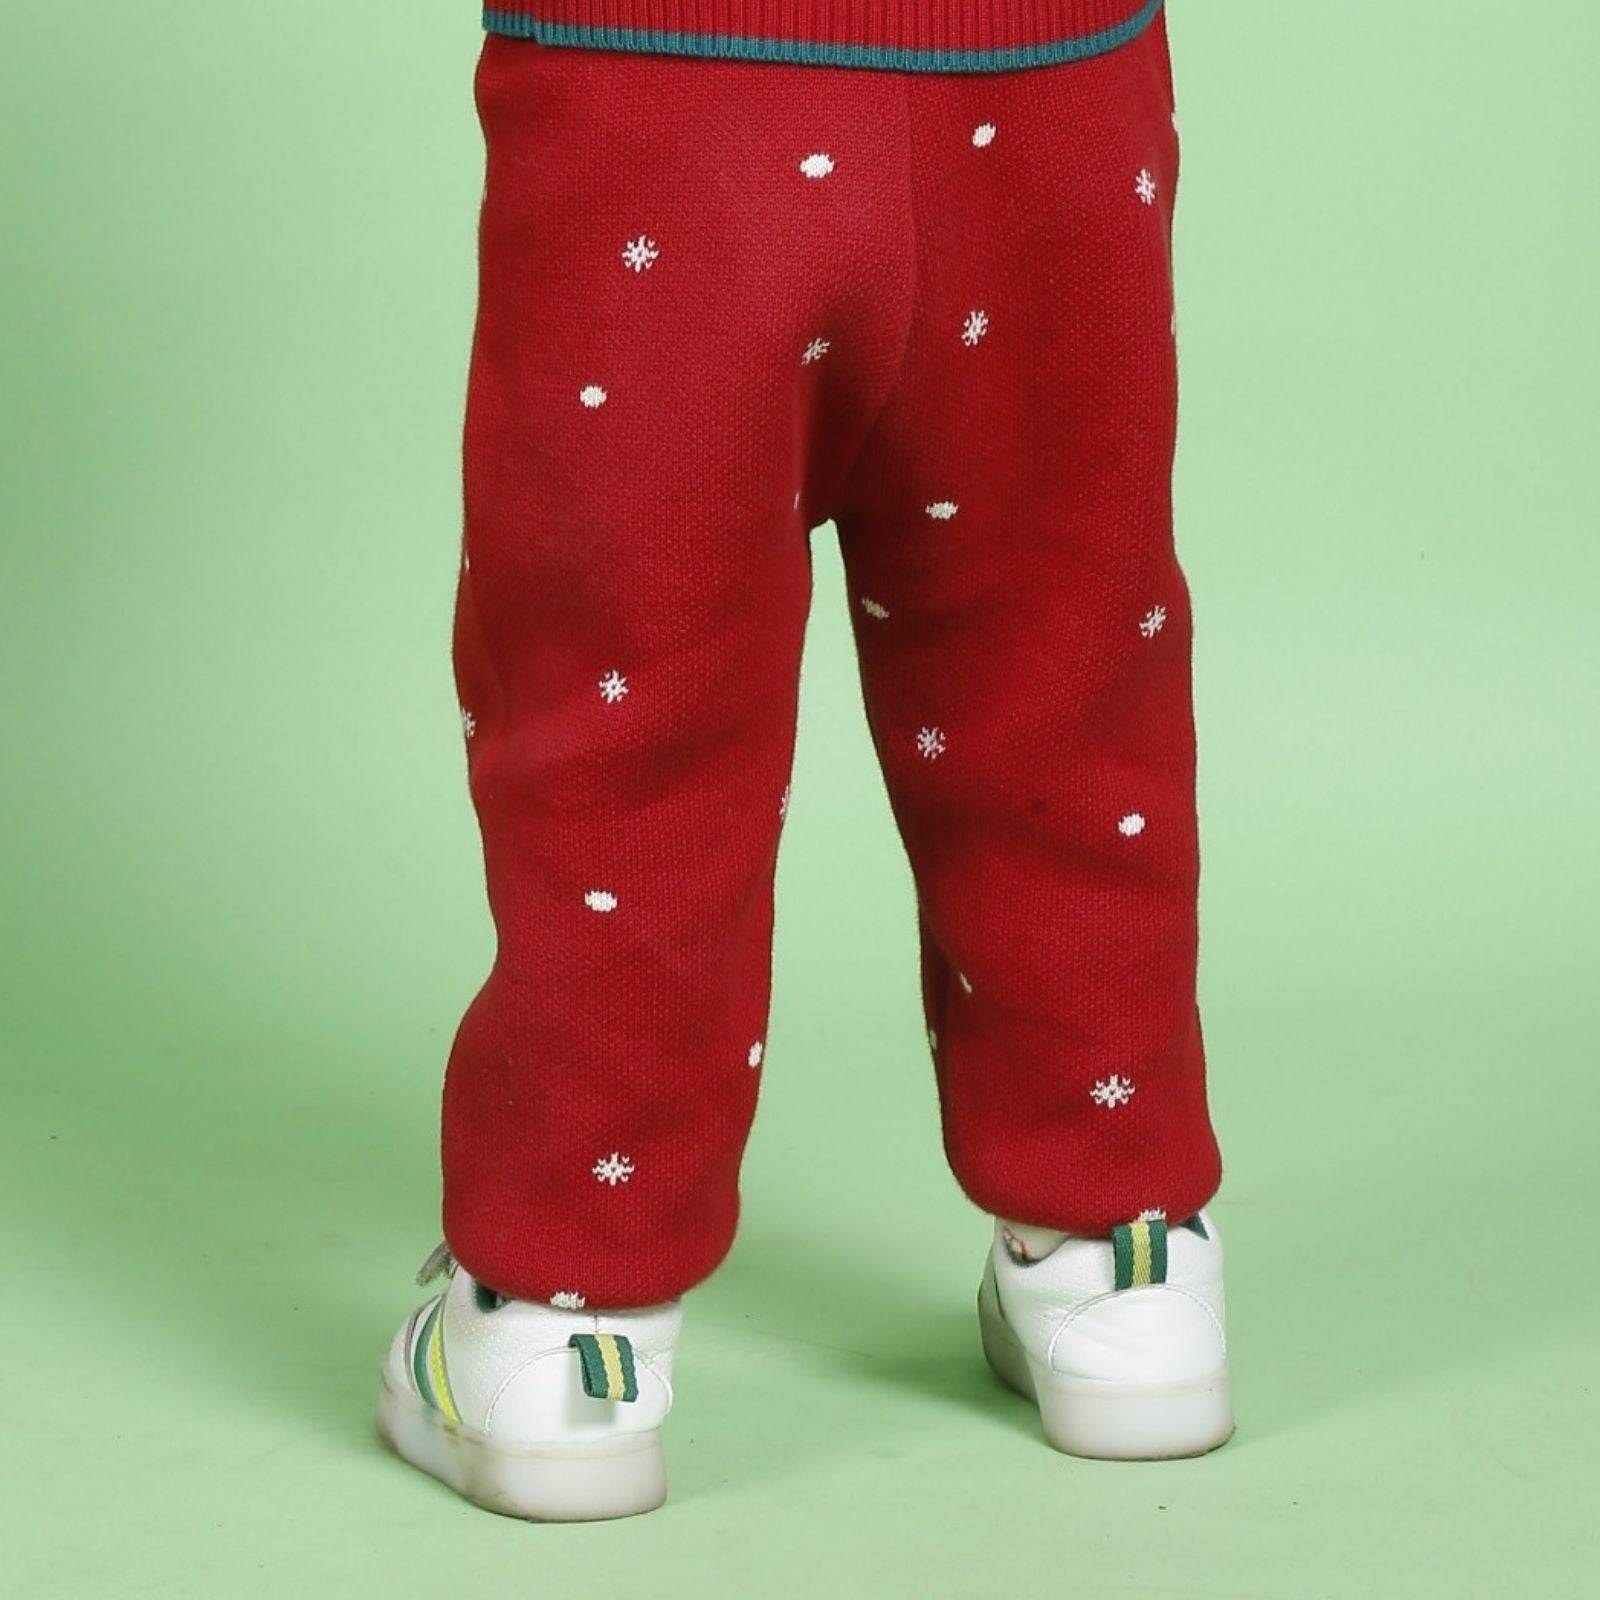 Greendeer Jaunty Reindeer & Joyful Reindeer 100% Cotton Sweater with Lower Set of 4